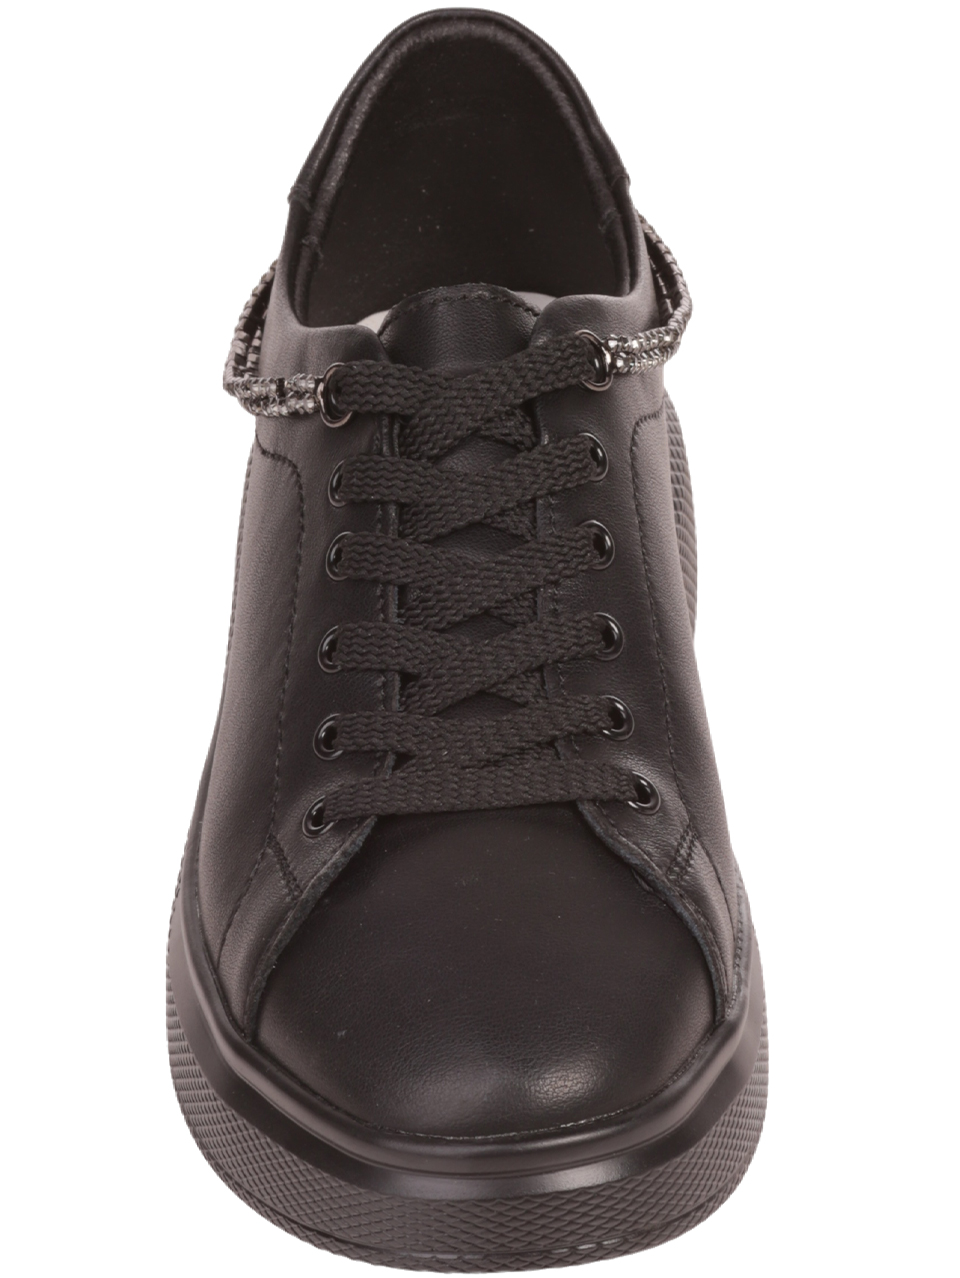 Ежедневни дамски обувки от естествена кожа в черно 3AF-23643 black